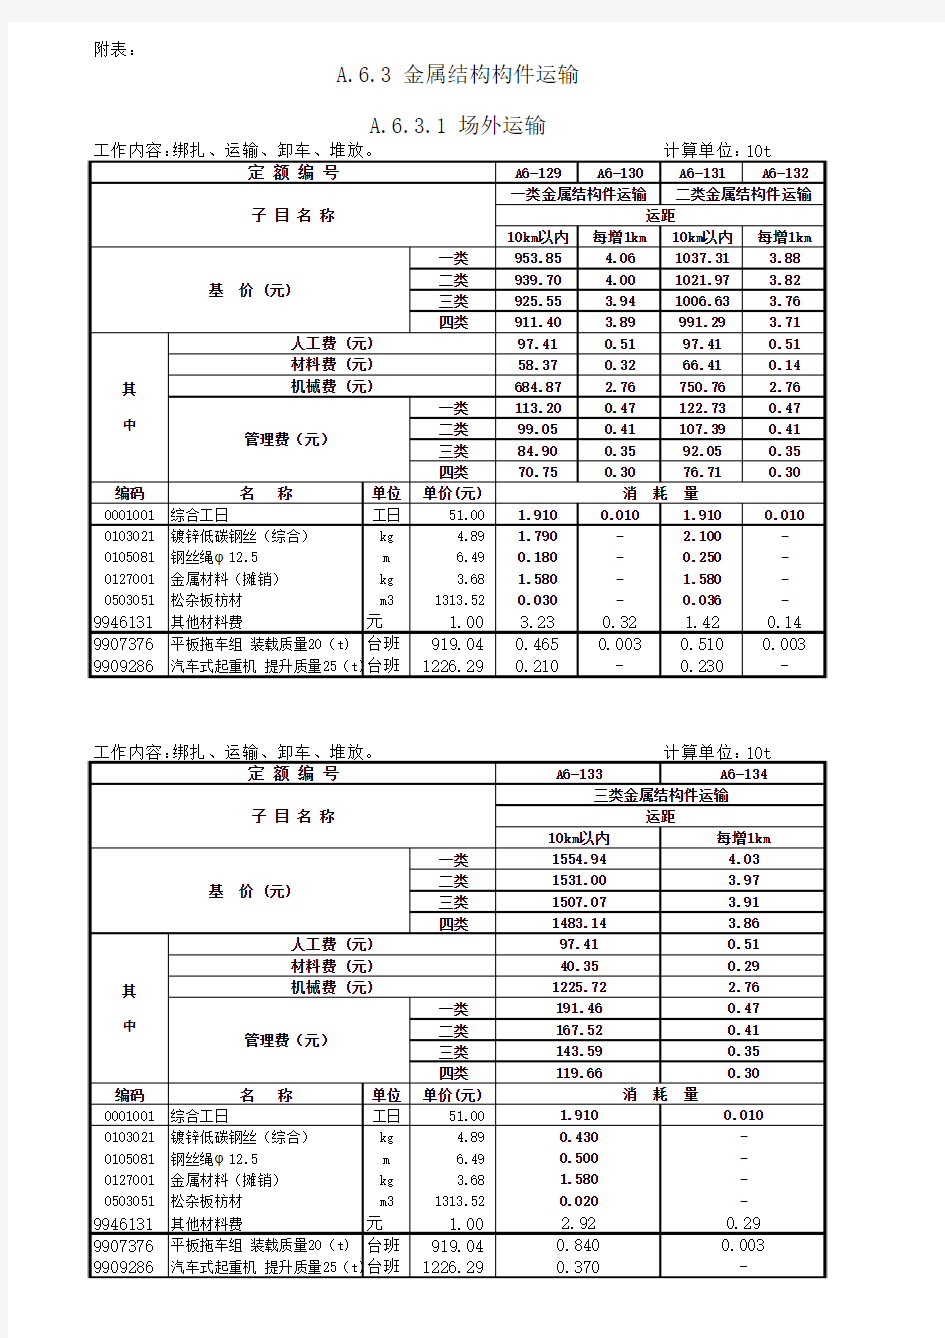 2010年《广东省建筑与装饰工程综合定额》金属结构工程——钢结构勘误表。